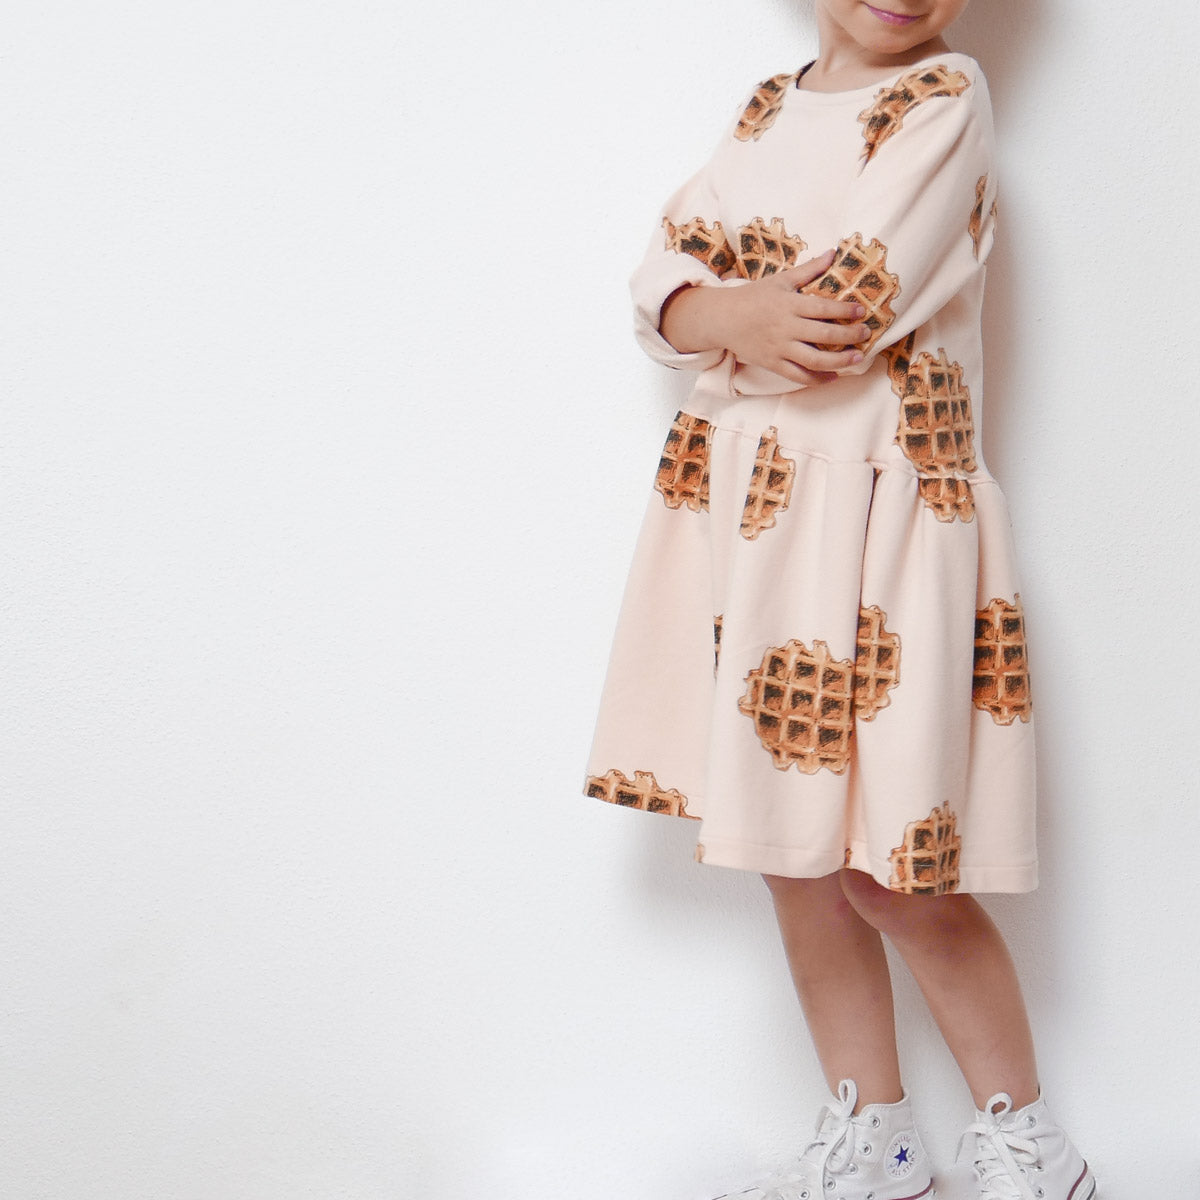 Ikatee - HELSINKI KIDS Dress 3-12 Years - Paper Sewing Pattern